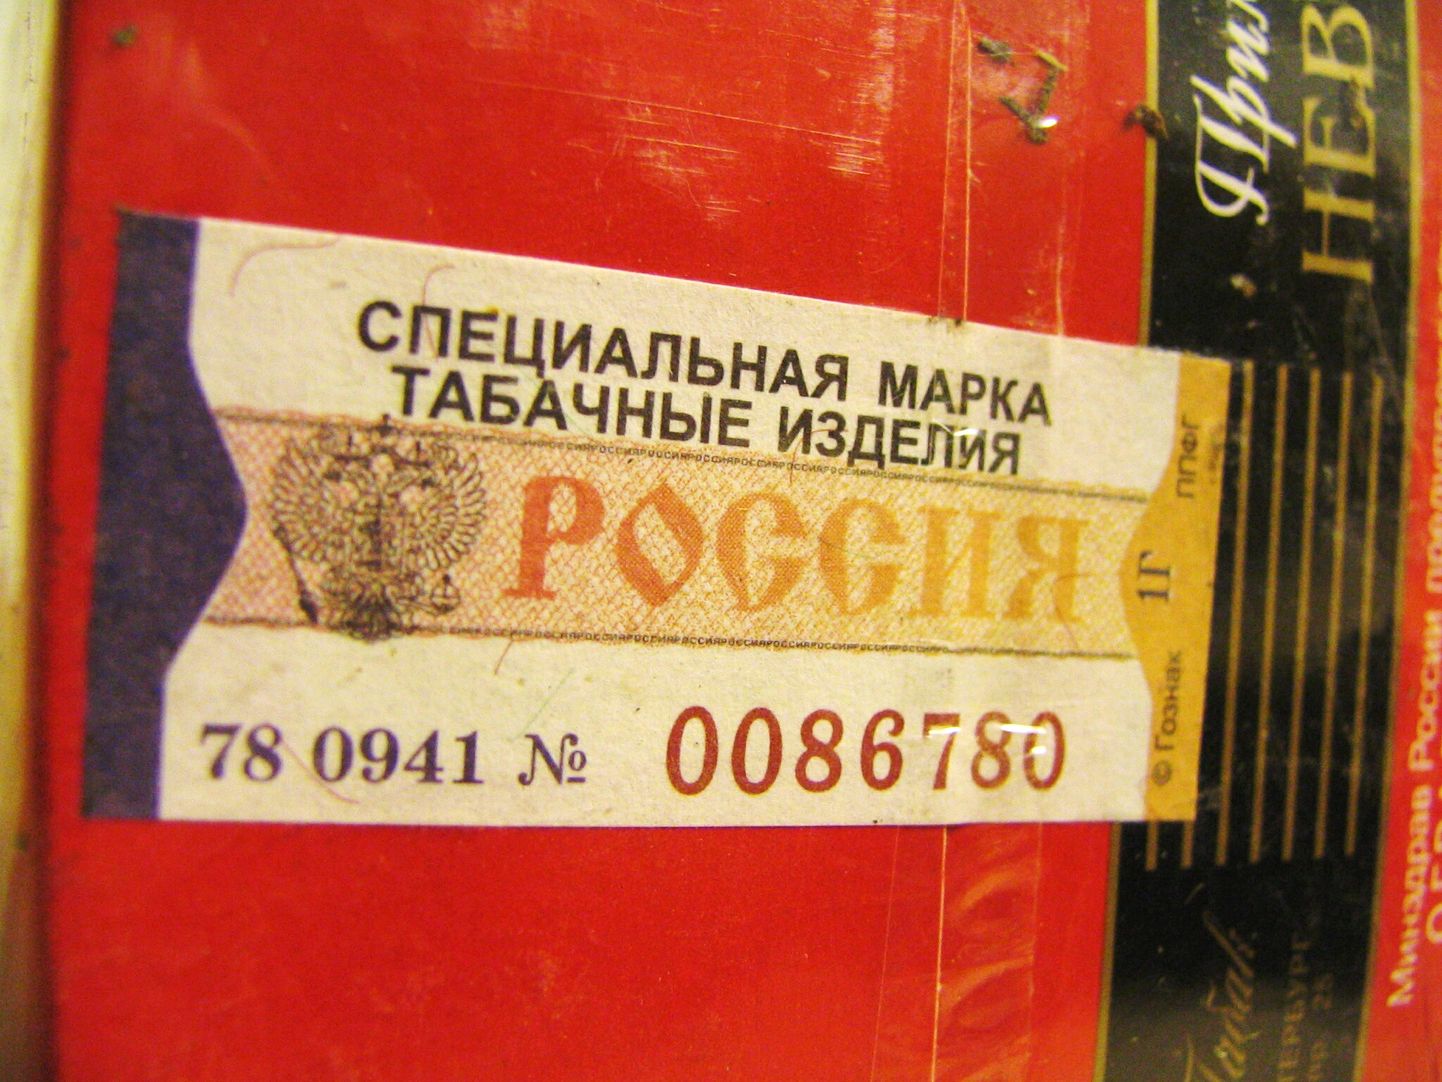 Vene maksumärkidega sigaretid.